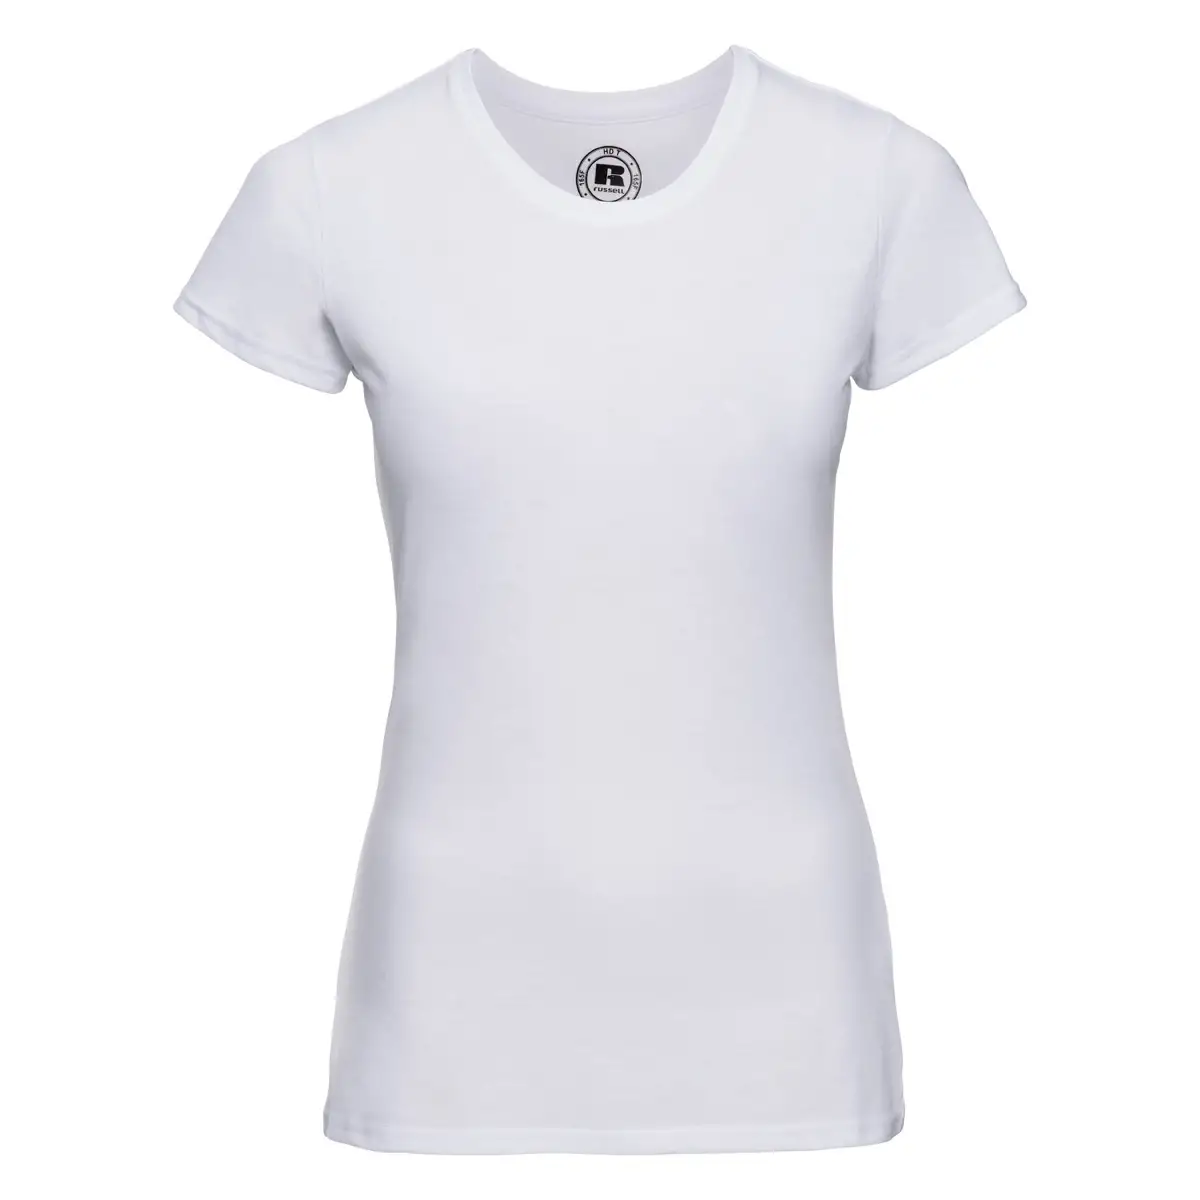 T-Shirt Manica Corta Donna Poliestere Personalizzata - Russell